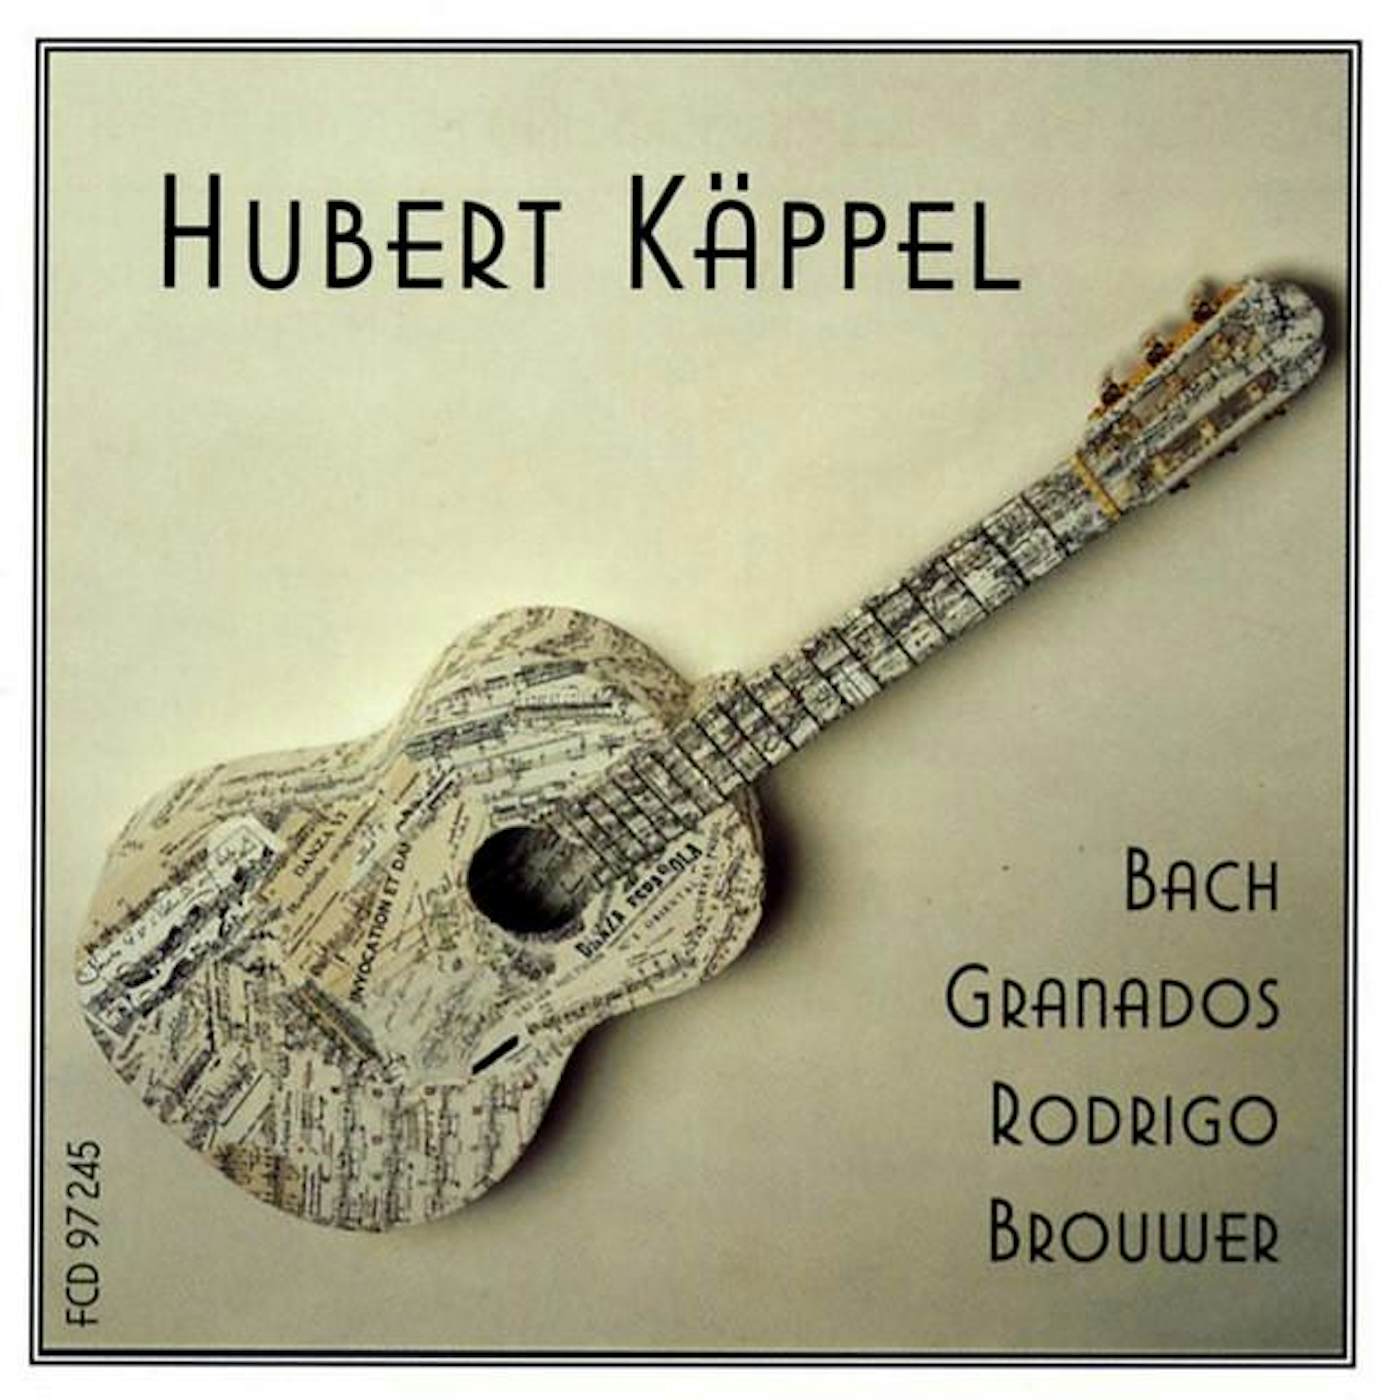 Hubert Kappel